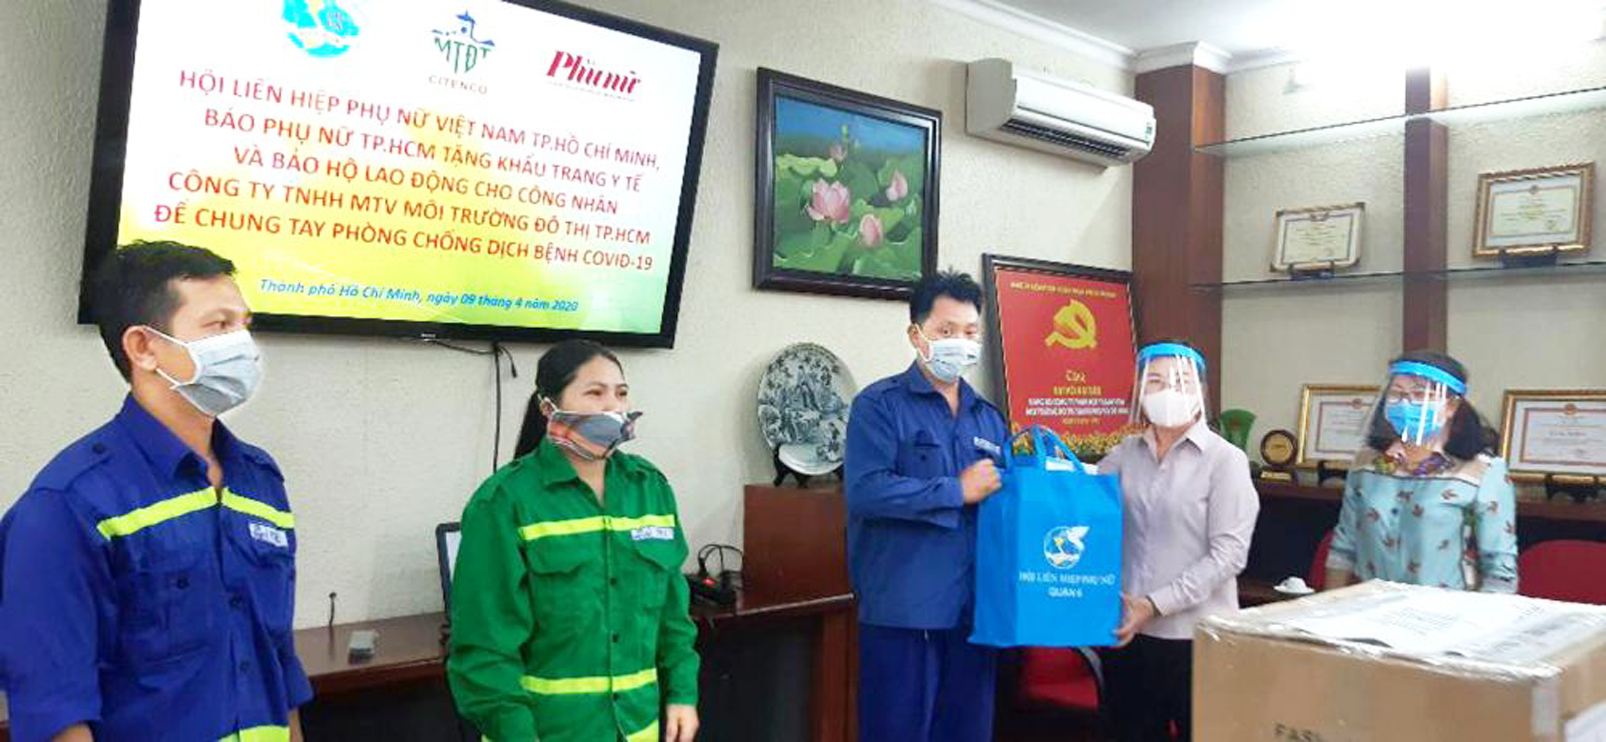 Lãnh đạo Hội LHPN TP.HCM tặng quà cho nữ công nhân vệ sinh Công ty TNHH MTV Môi trường đô thị TP.HCM